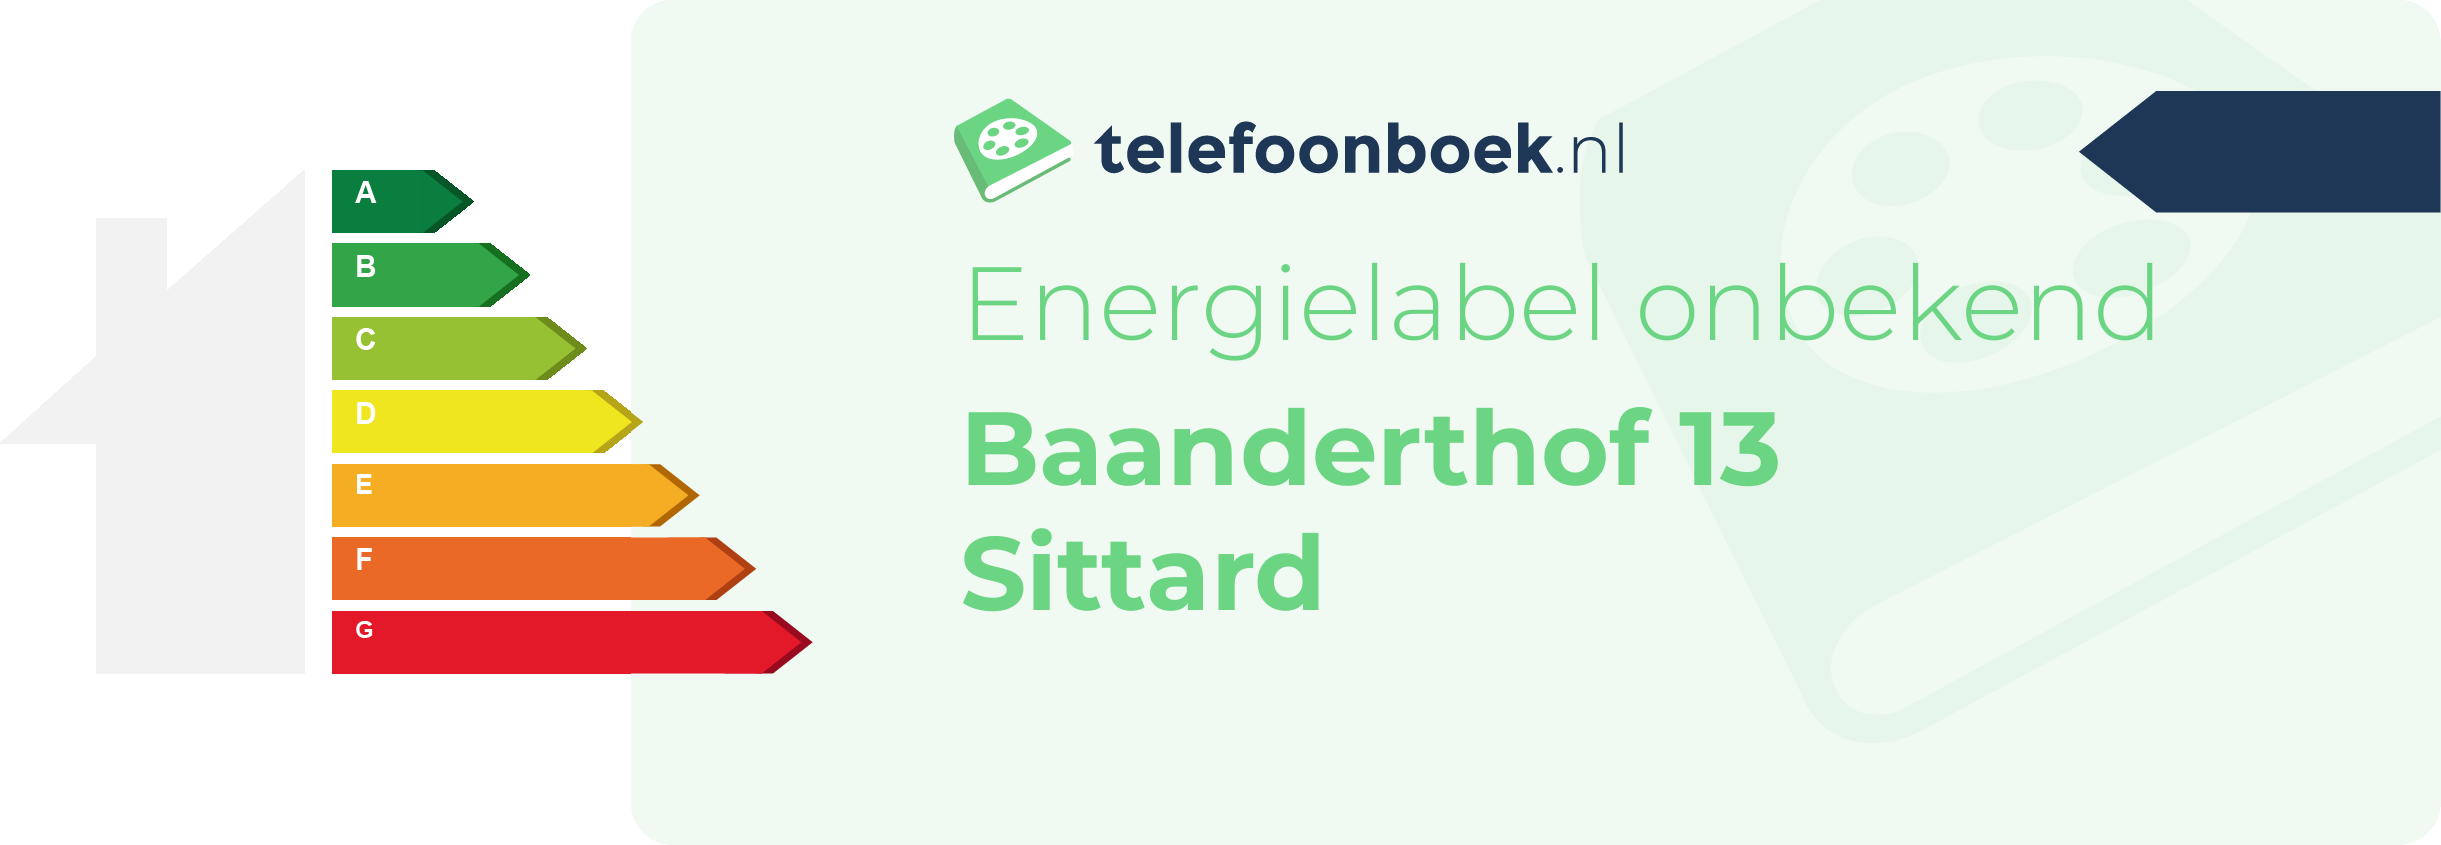 Energielabel Baanderthof 13 Sittard